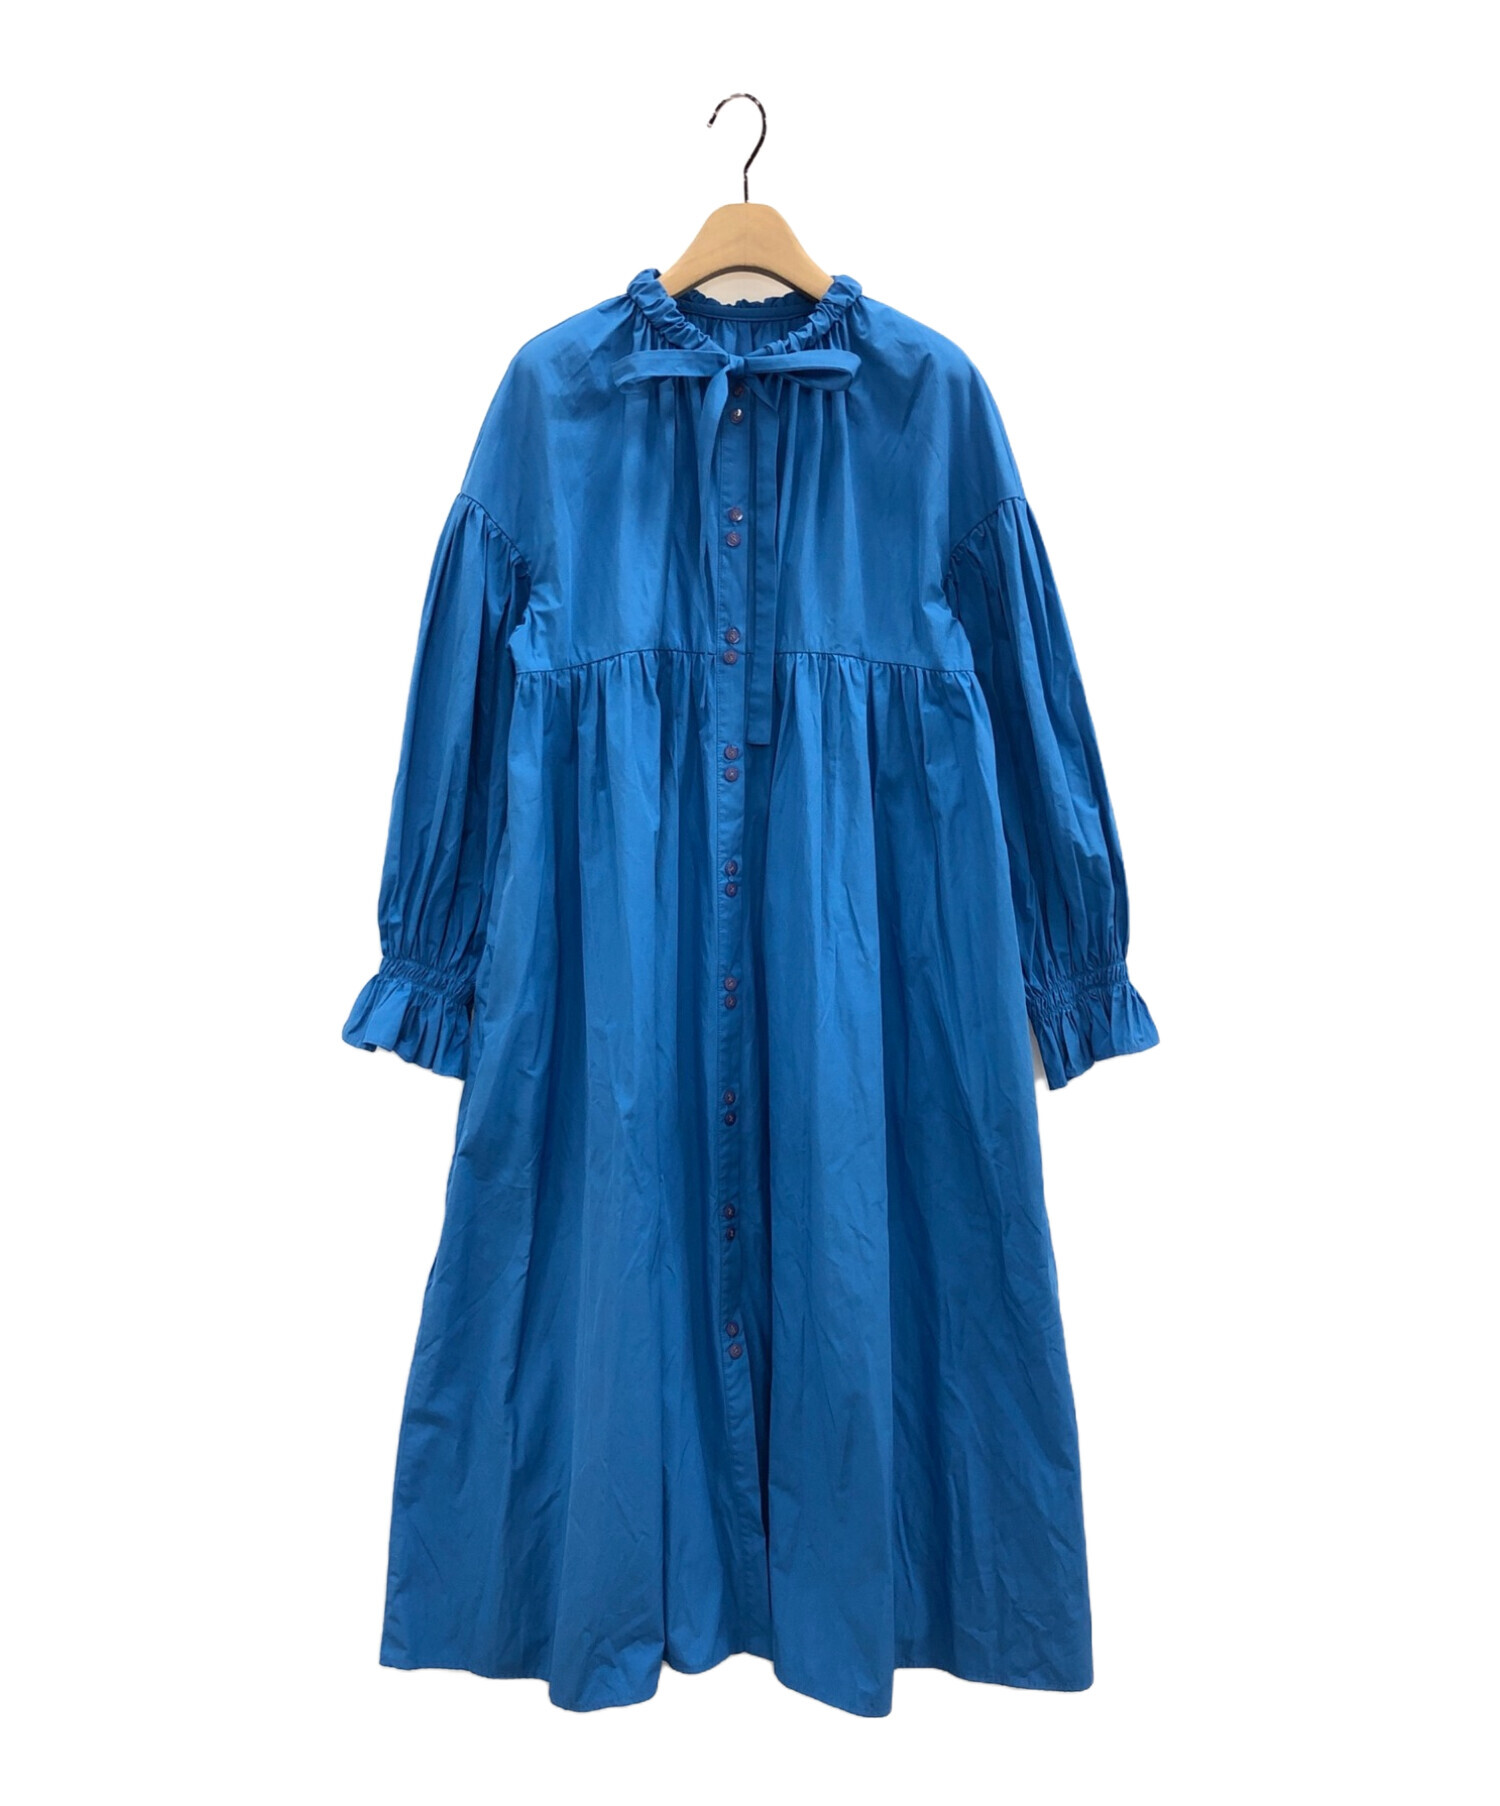 machatt (マチャット) リボンバックティアードドレス ブルー サイズ:F